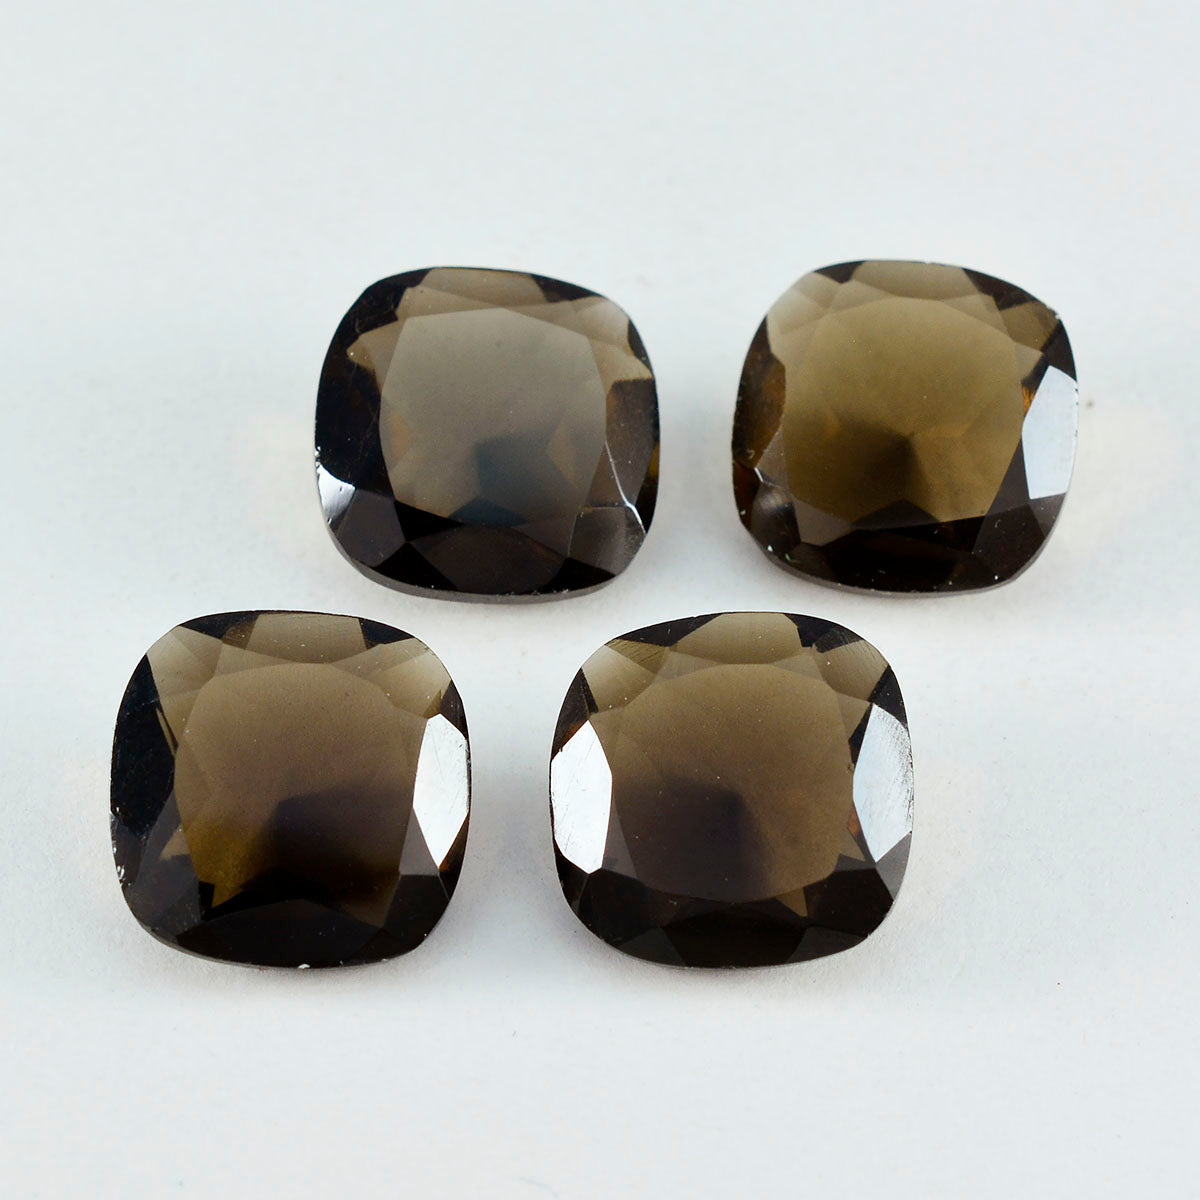 Riyogems, 1 pieza, cuarzo ahumado marrón auténtico facetado, 11x11mm, forma de cojín, piedra de buena calidad